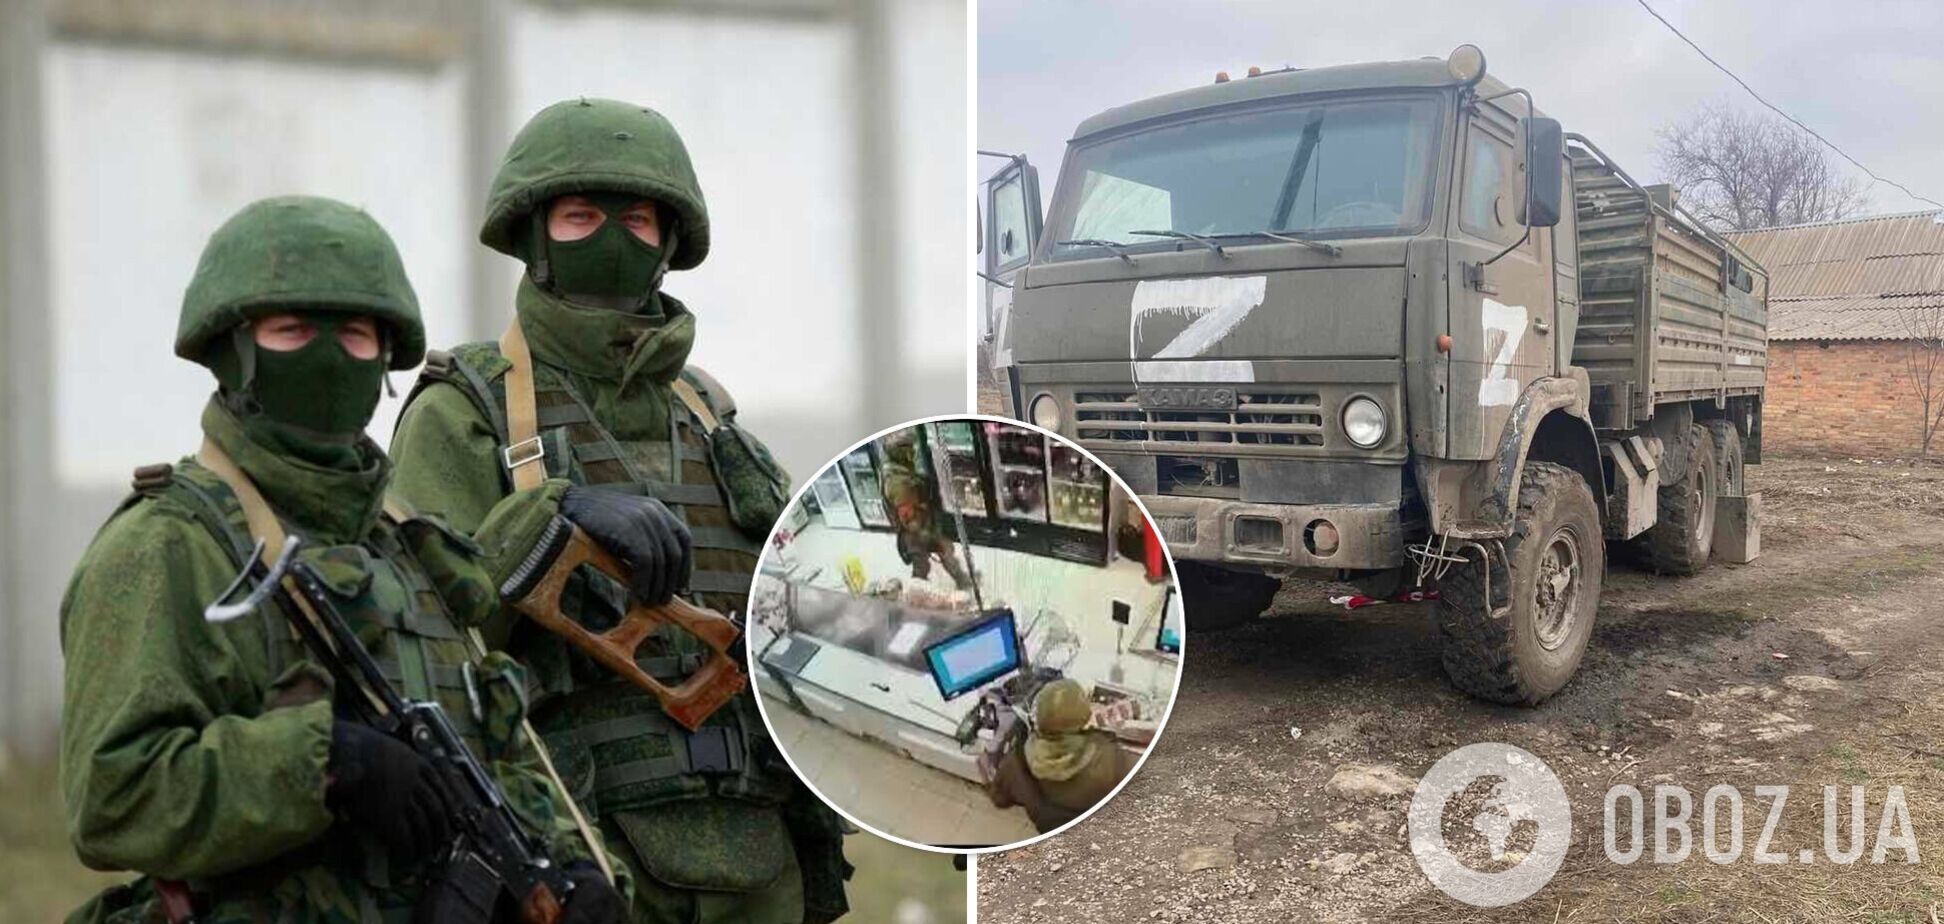 'Нация голодранцев': оккупанты начали КамАЗами вывозить в РФ награбленное имущество украинцев